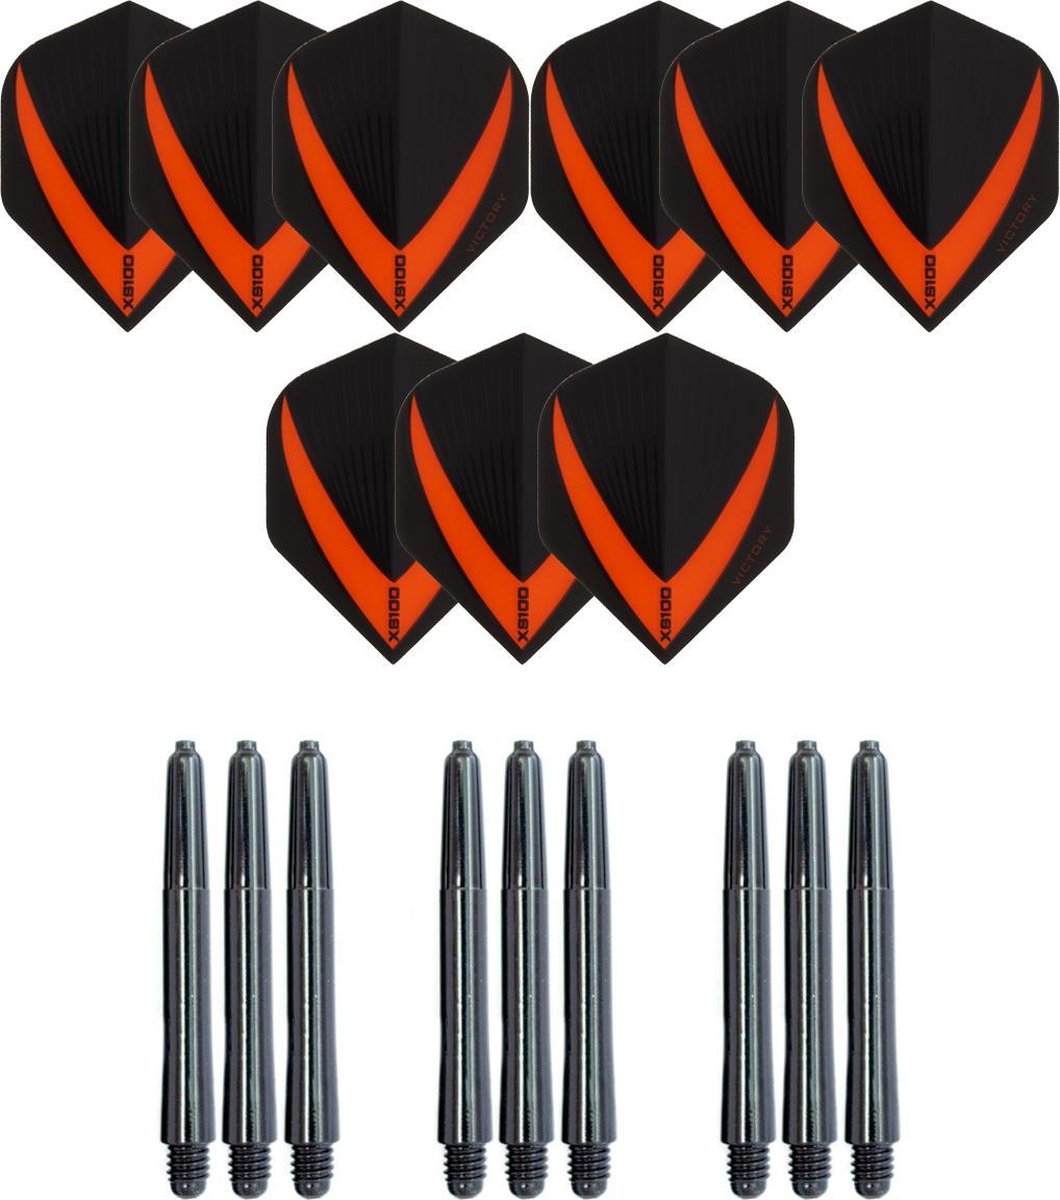 3 sets (9 stuks) Super Sterke - Oranje - Vista-X - darts flights - inclusief 3 sets (9 stuks) - medium - darts shafts